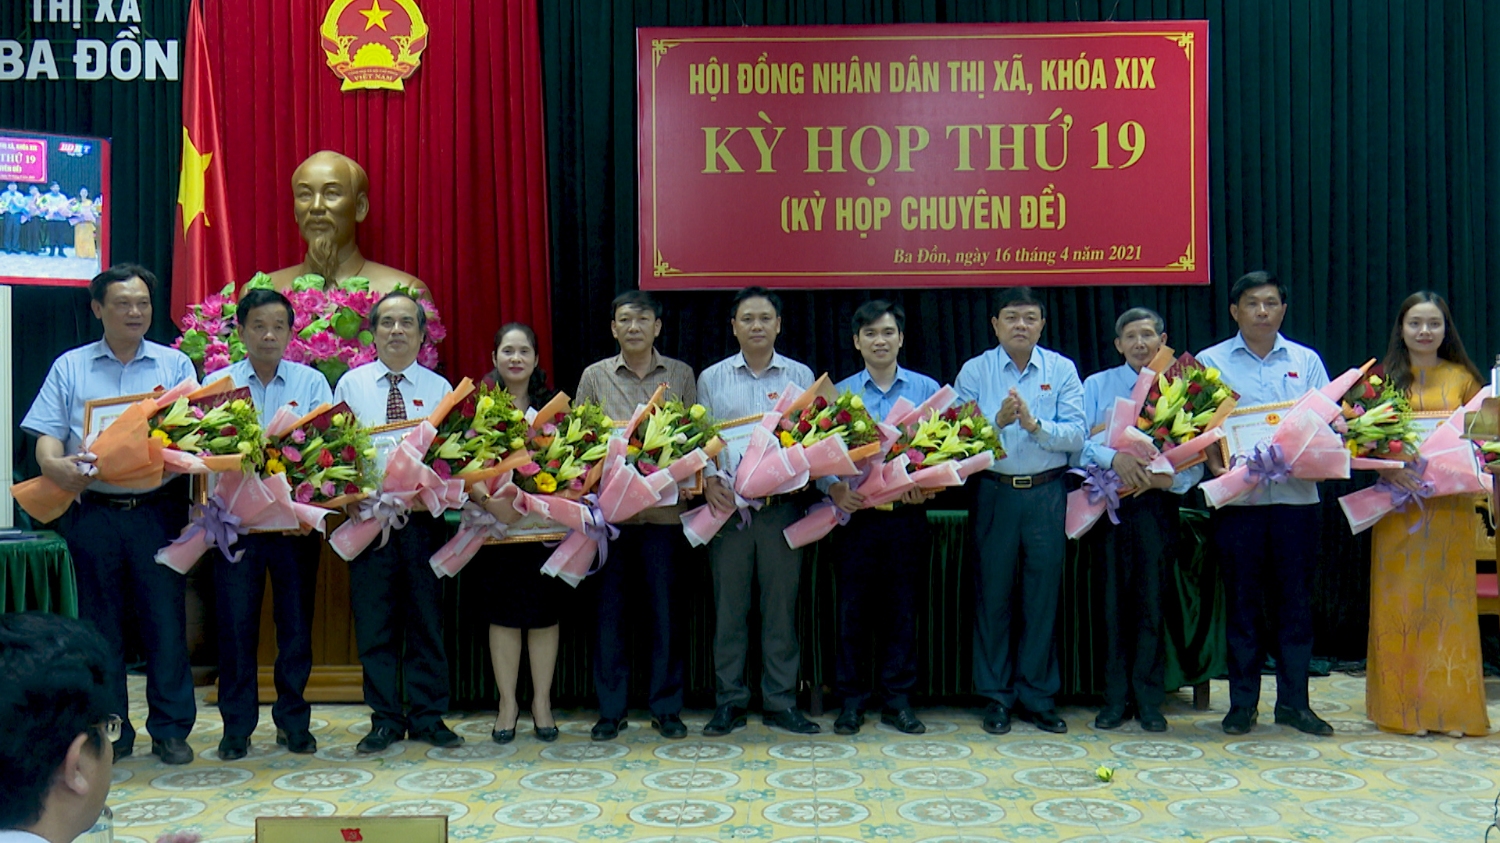 Chủ tịch UBND thị xã Ba Đồn đã trao giấy khen cho 10 cá nhân có nhiều thành tích xuất sắc trong hoạt động của HĐND, UBND thị xã nhiệm kỳ 2016 2021